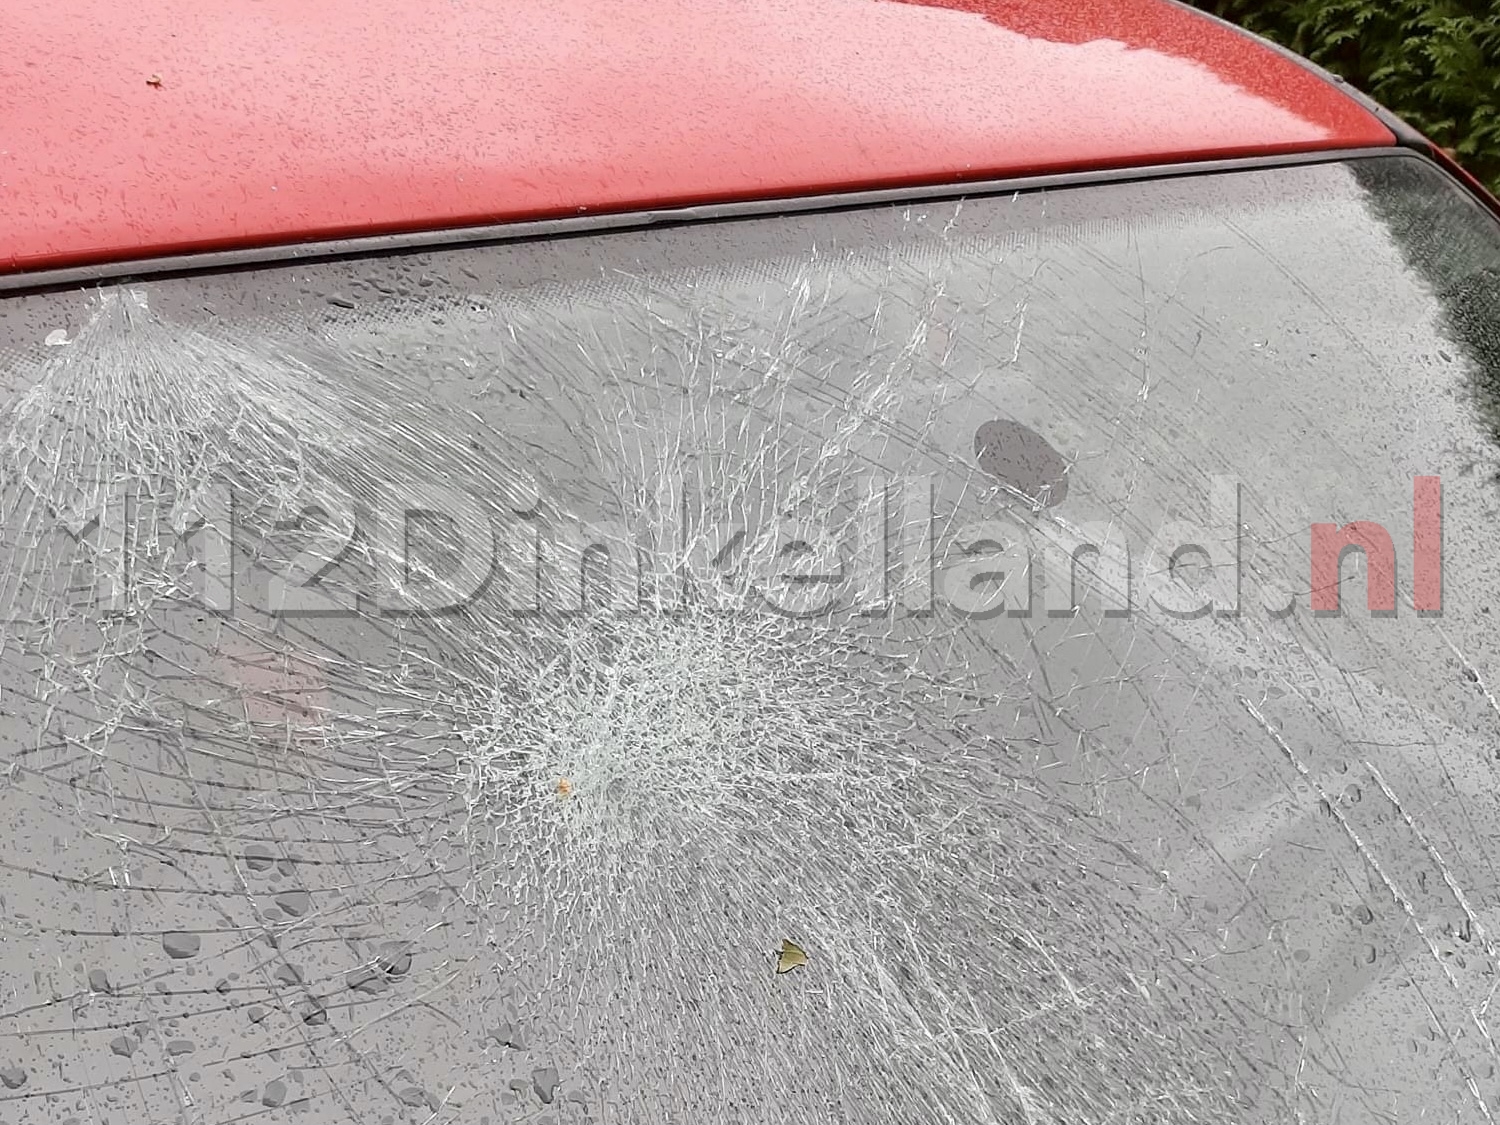 Auto in Noord Deurningen doelwit van vernielingen